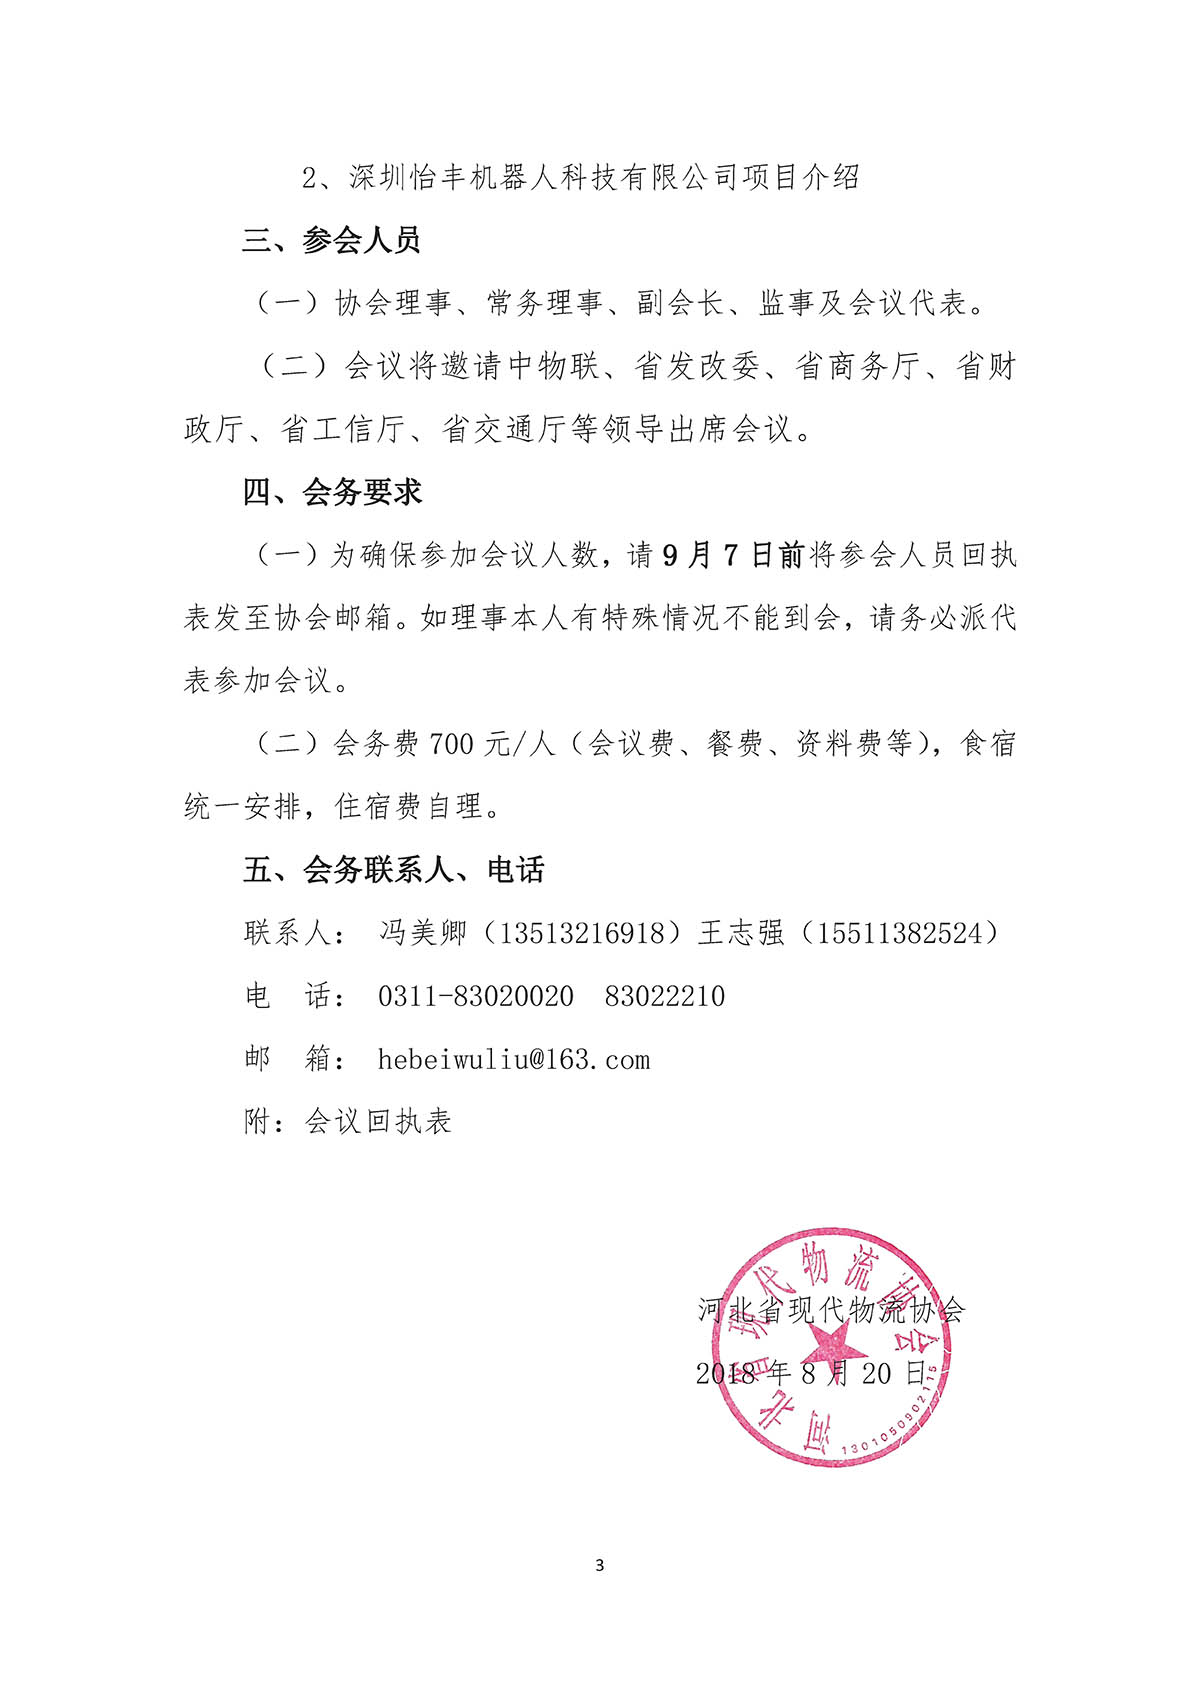 河北省现代物流协会召开三届三次会员代表大会暨理事会的通知